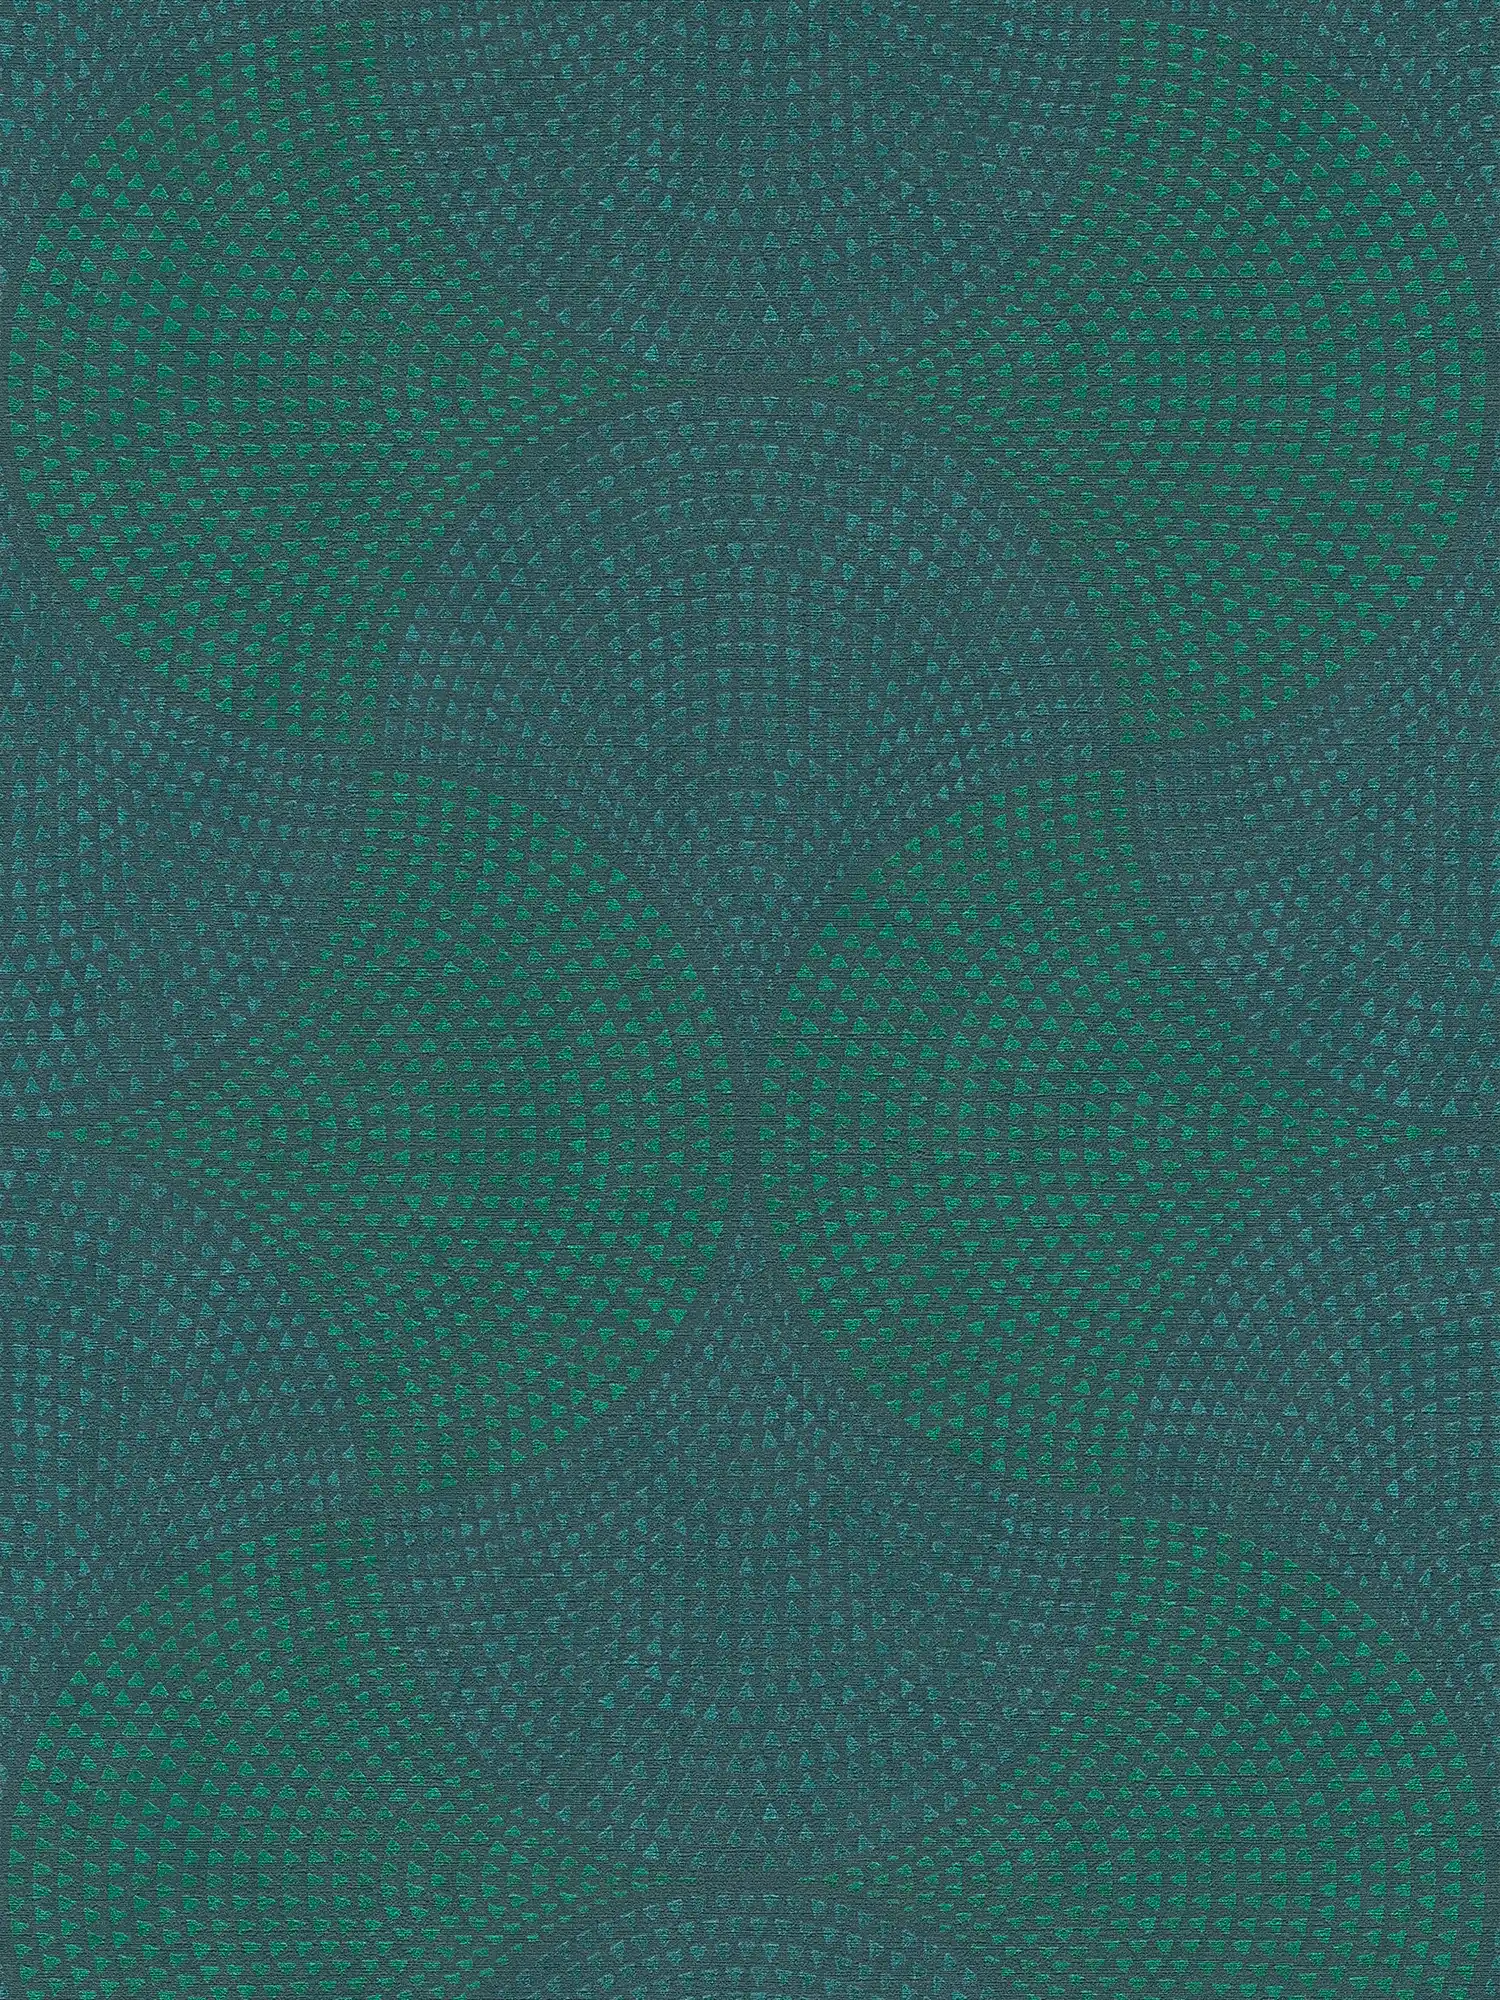 Papier peint intissé Design métallique avec motif mosaïque - bleu, vert, métallique
